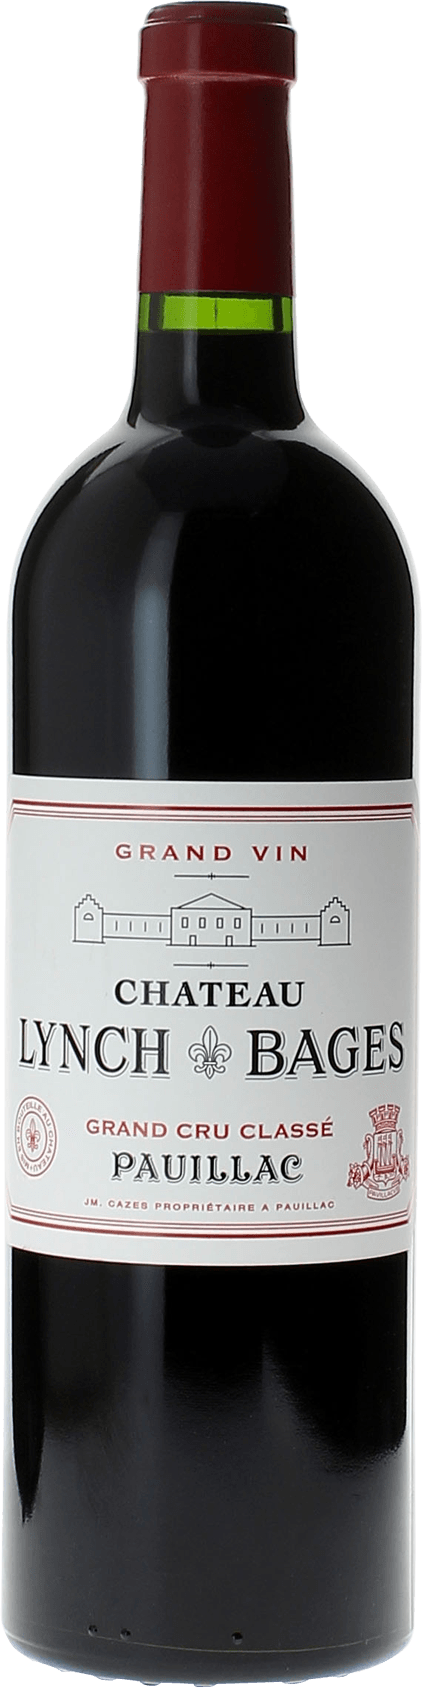 Lynch bages 1998 5 me Grand cru class Pauillac, Bordeaux rouge